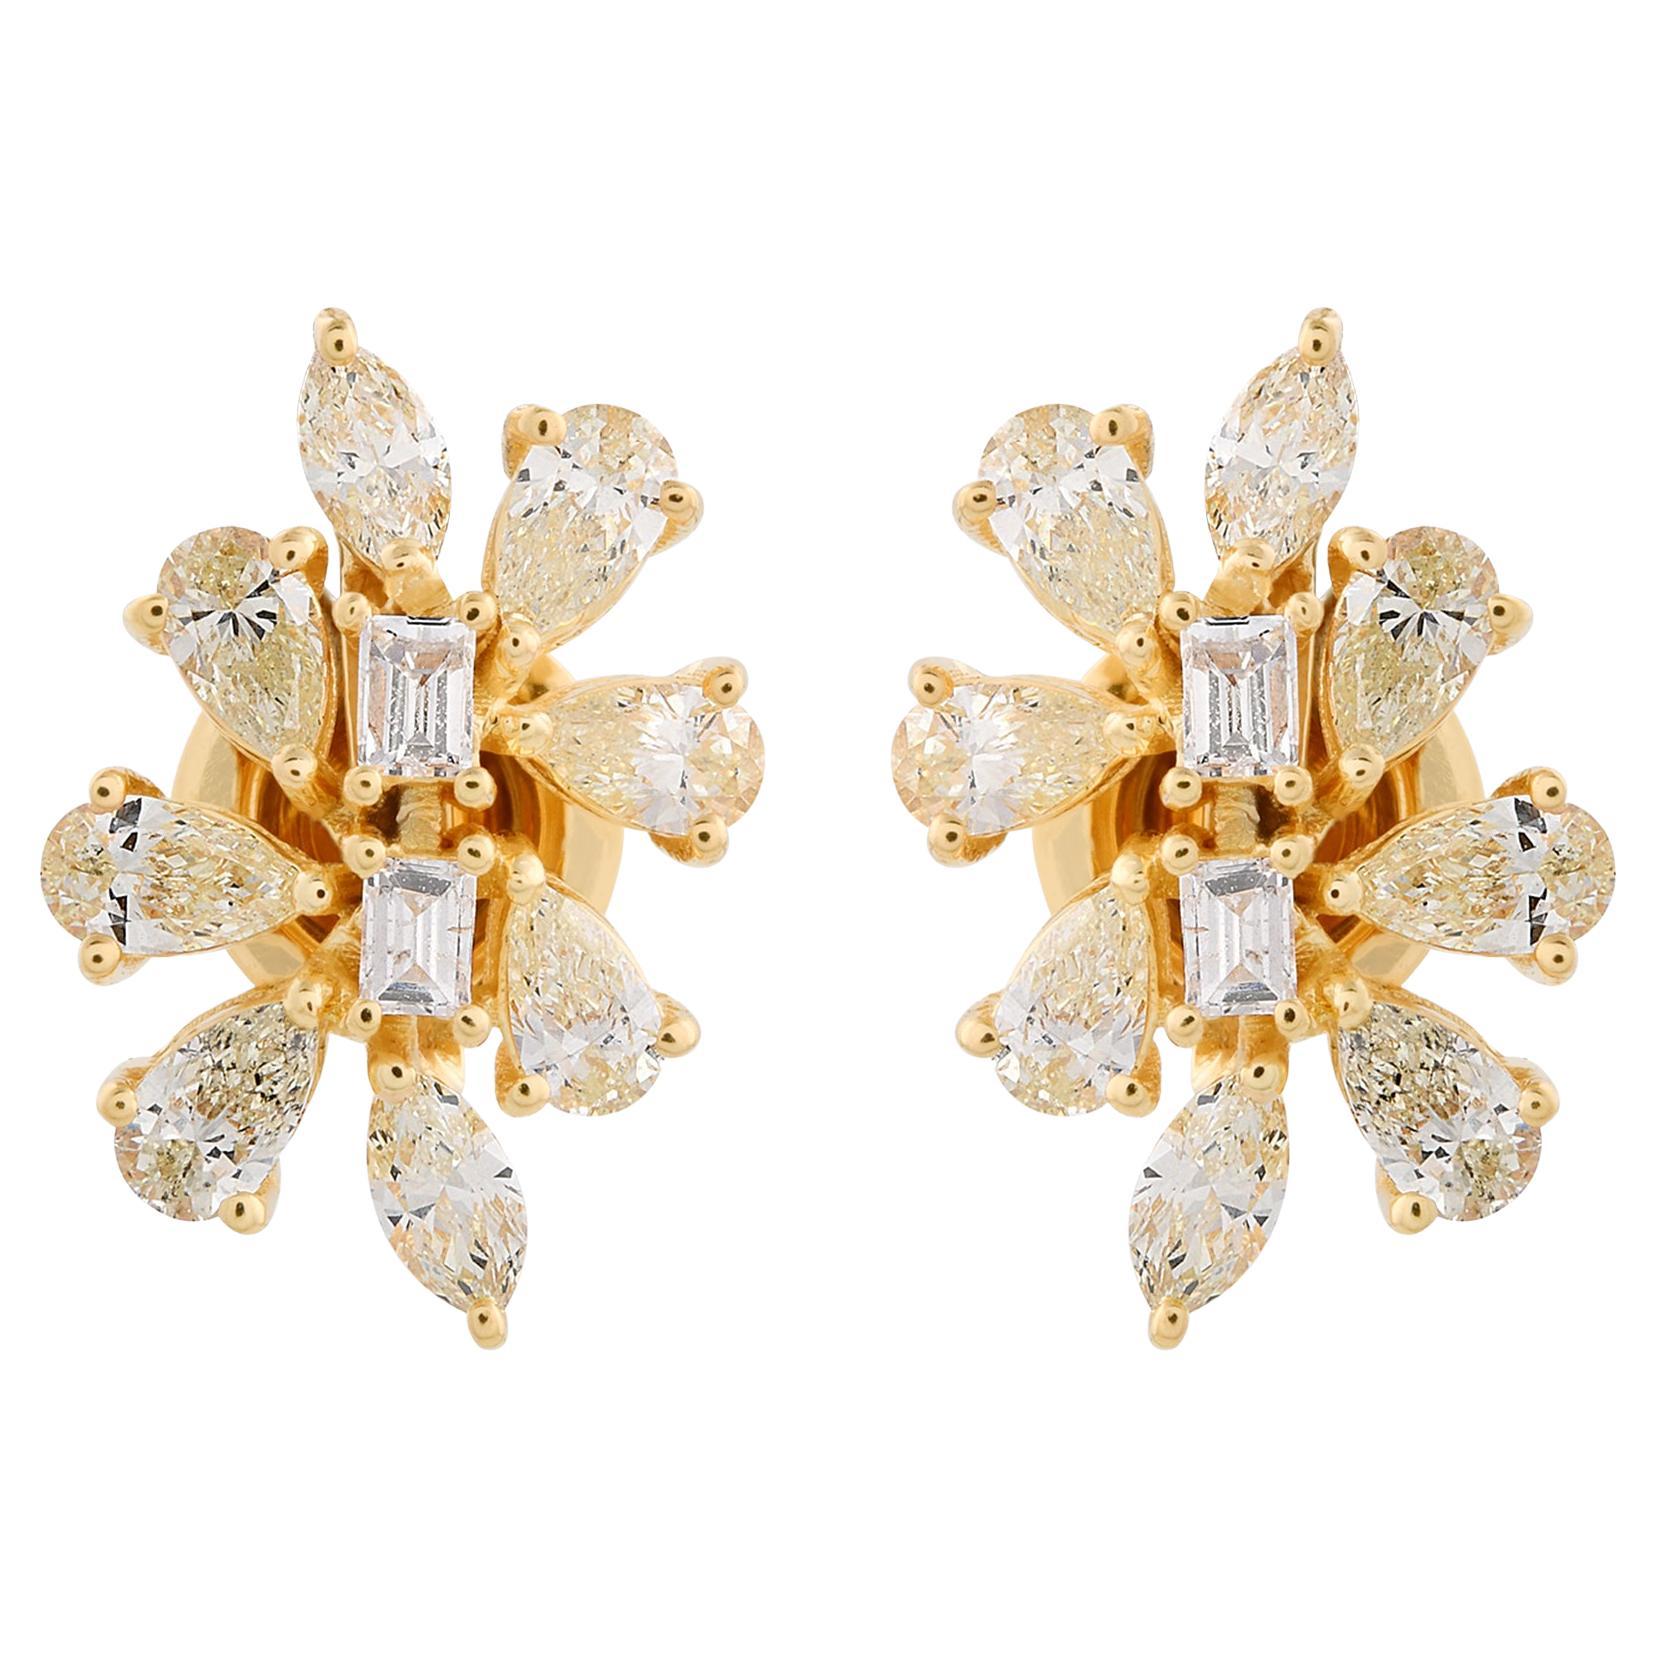 1.70 Carat SI/HI Pear & Emerald Cut Diamond Stud Earrings 18 Karat Yellow Gold